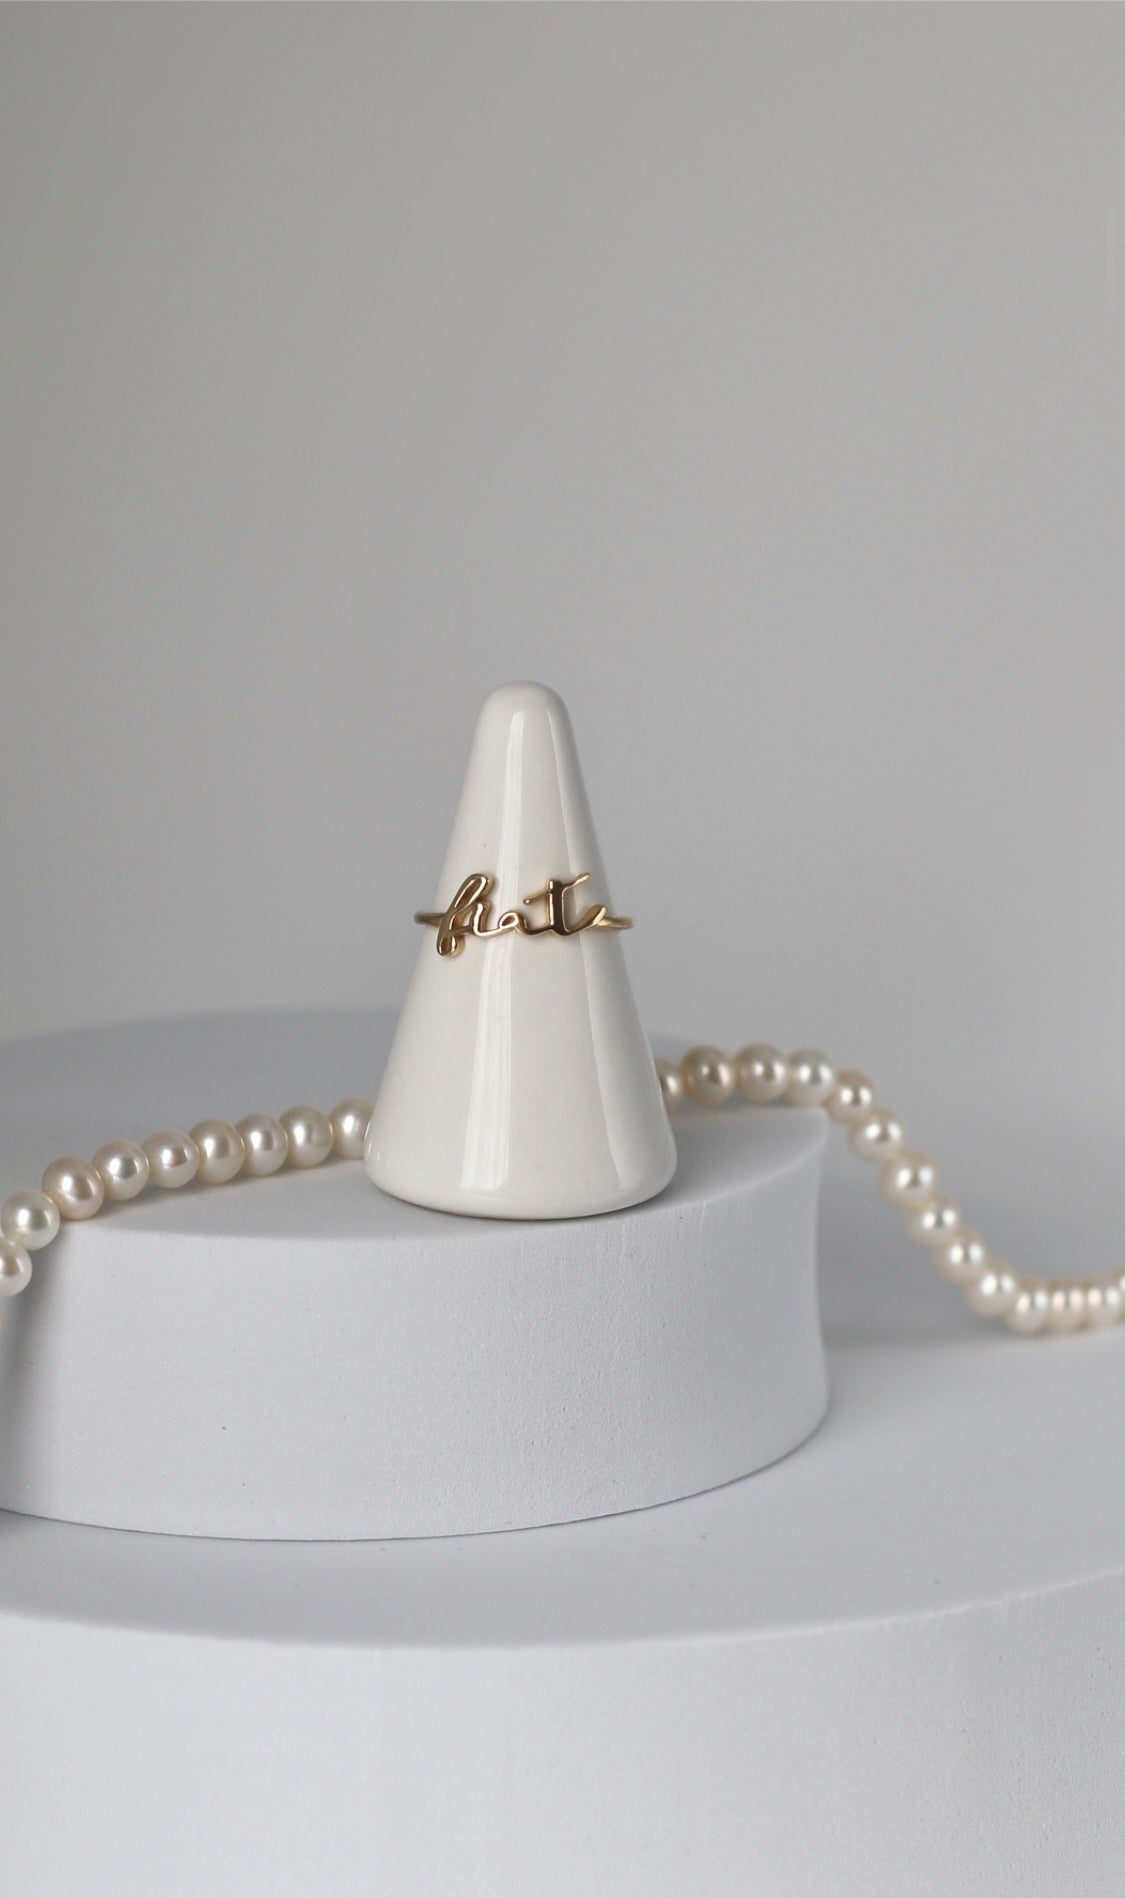 Dainty Catholic Jewelry - Catholic Rings made in USA – The Little Catholic